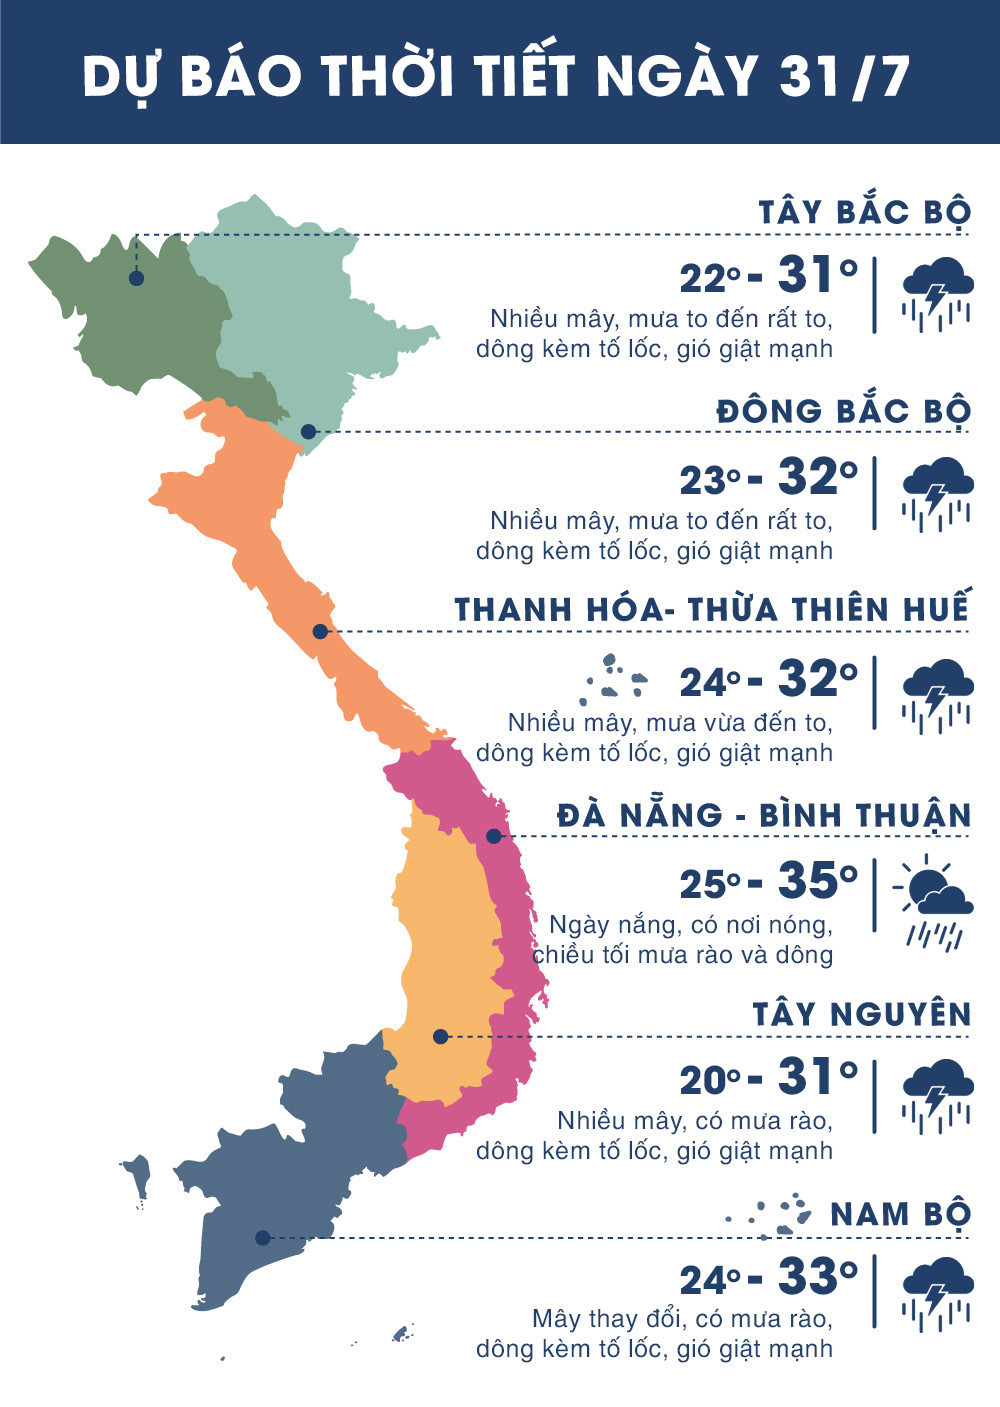 Dự báo nhiệt độ các vùng trên cả nước ngày 31/7/2018. Ảnh: news.zing.vn